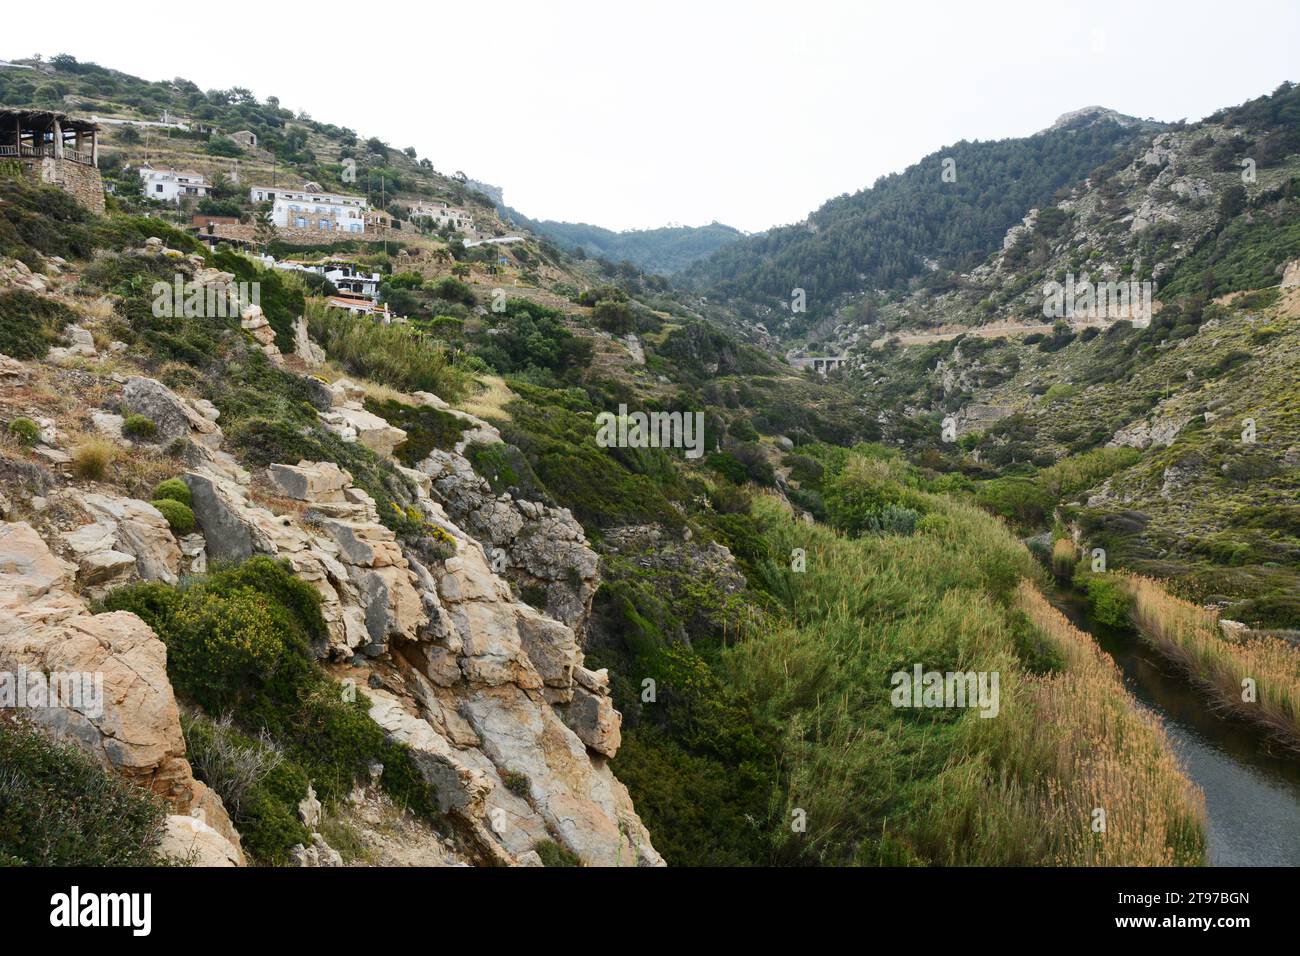 Il villaggio di montagna di NAS. Sul bordo del canyon Chalaris, sulla costa settentrionale dell'Ikaria, una "zona blu" nelle isole greche, in Grecia. Foto Stock